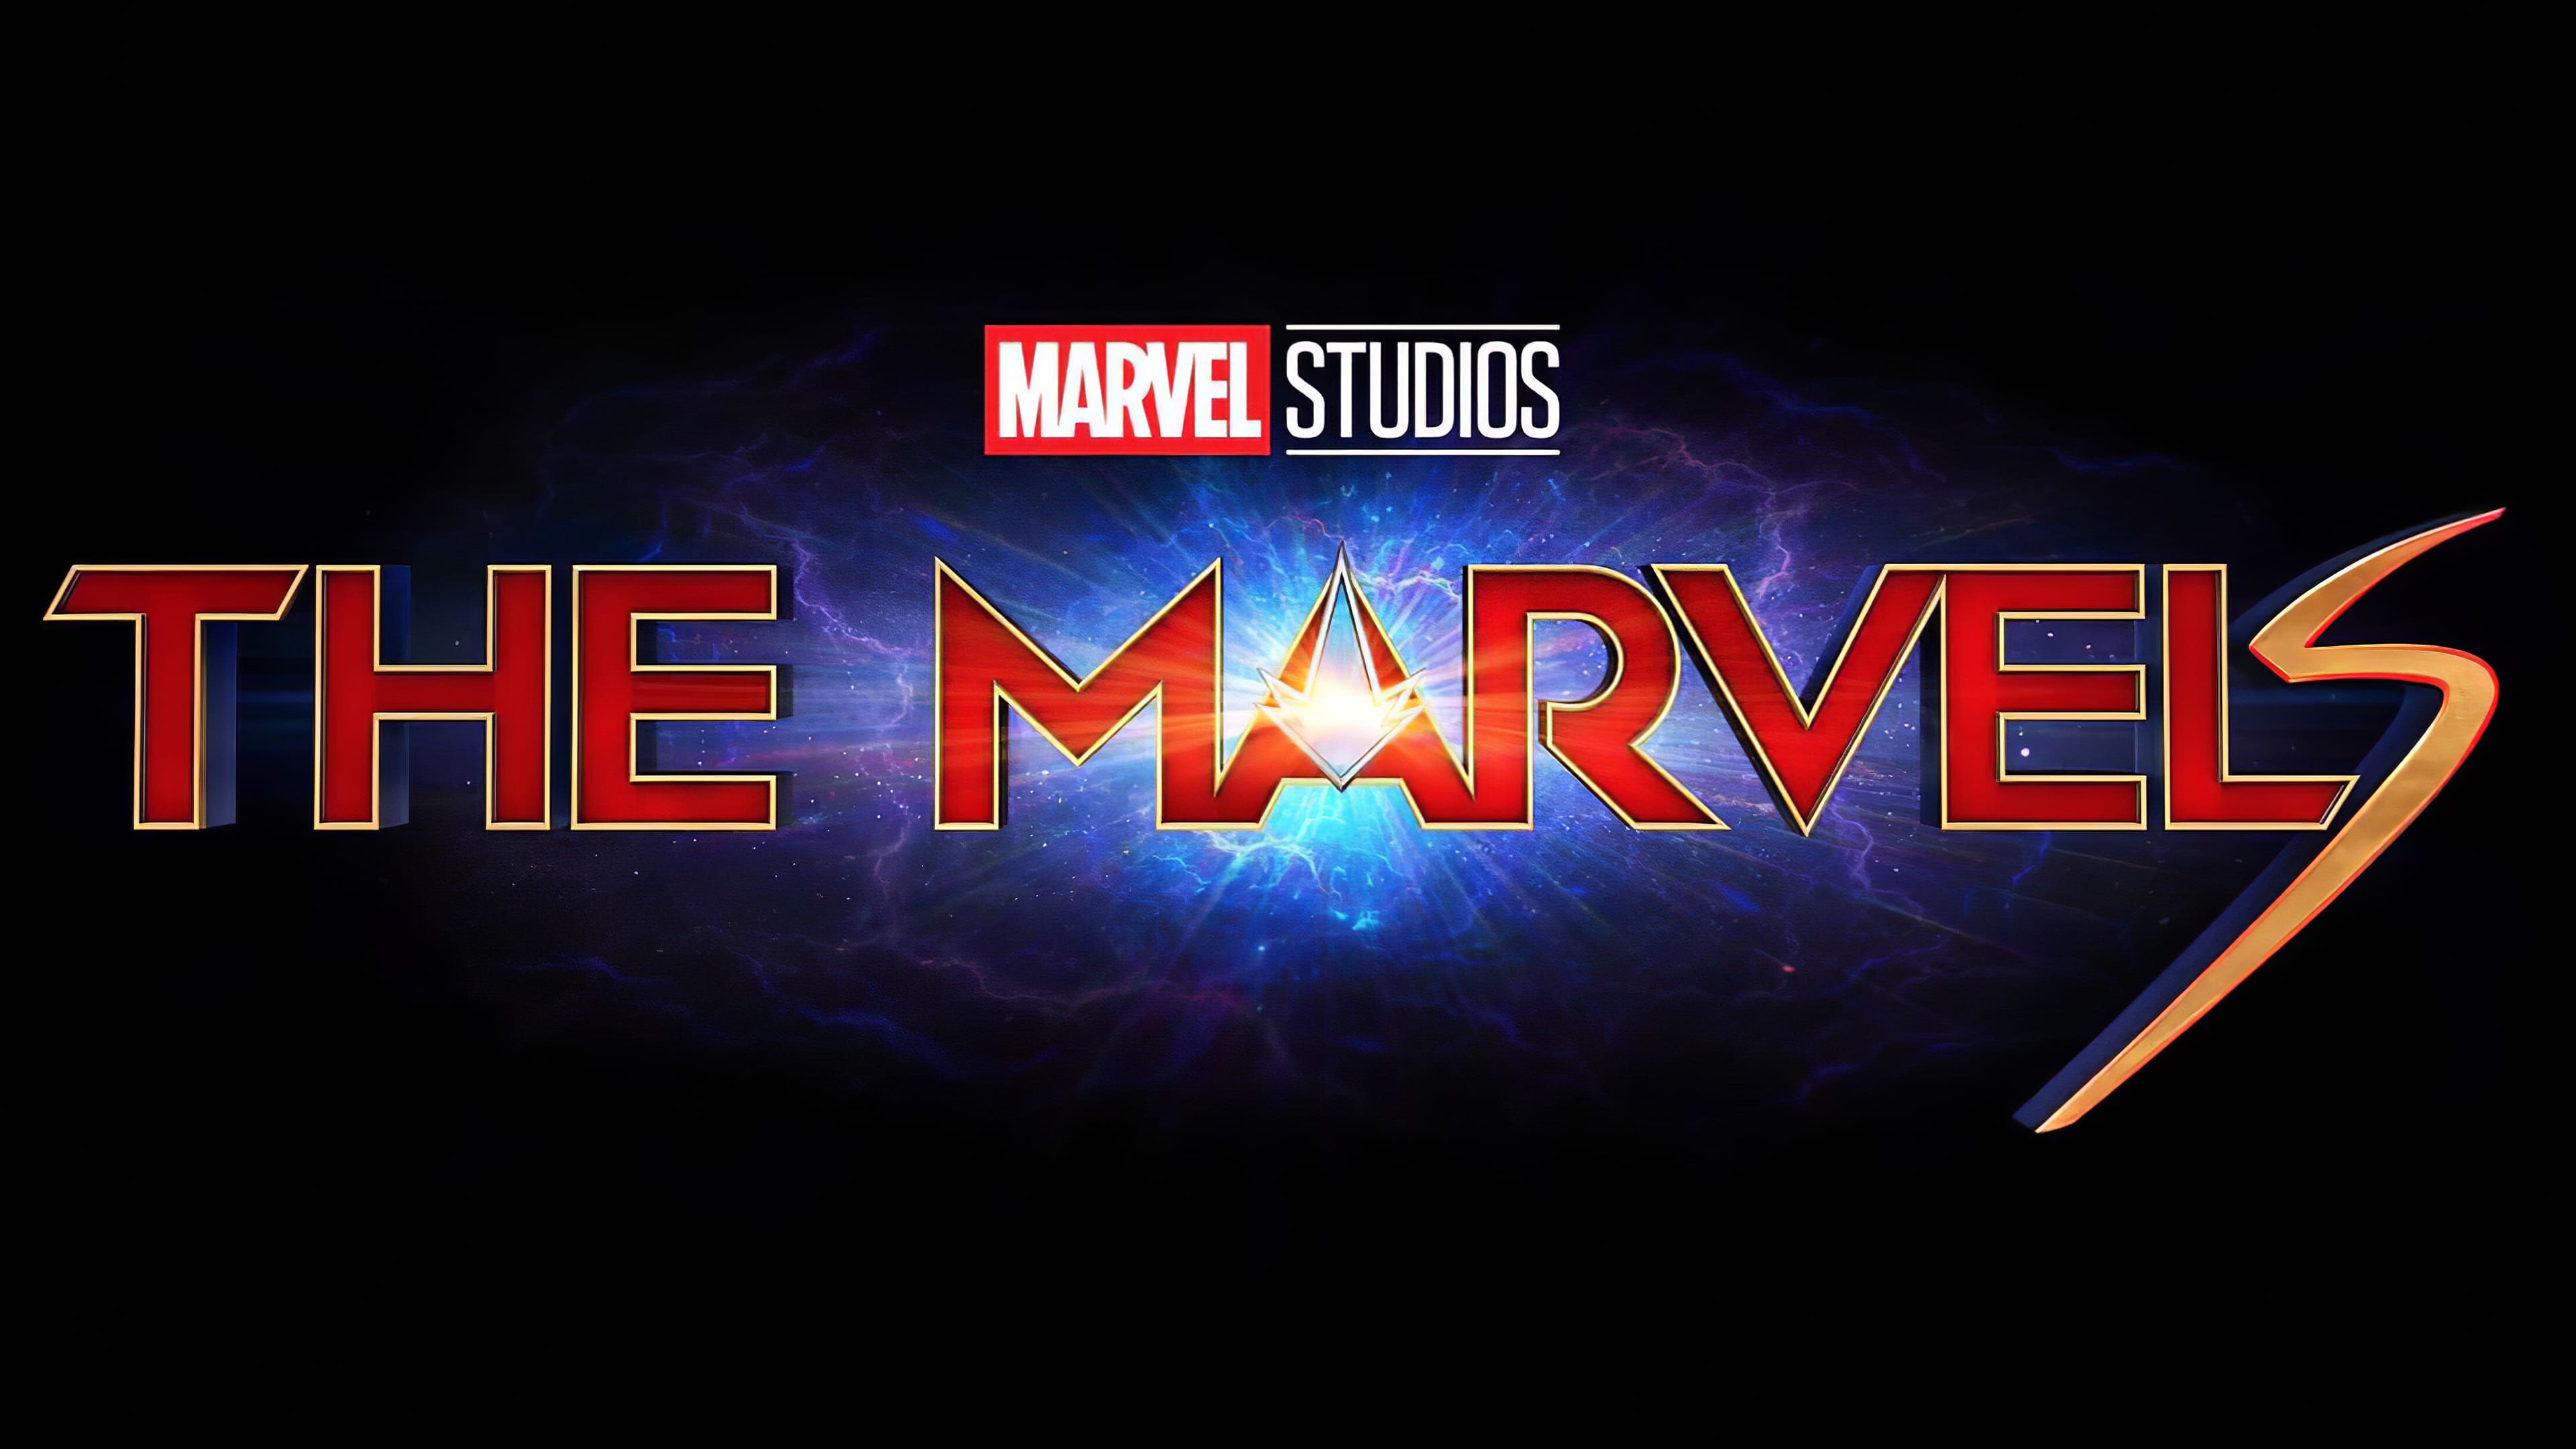 Титры после капитан марвел. Капитан Марвел 2. Марвелы / the Marvels. Капитан Марвел 2 лого. Marvel логотип киновселенной.